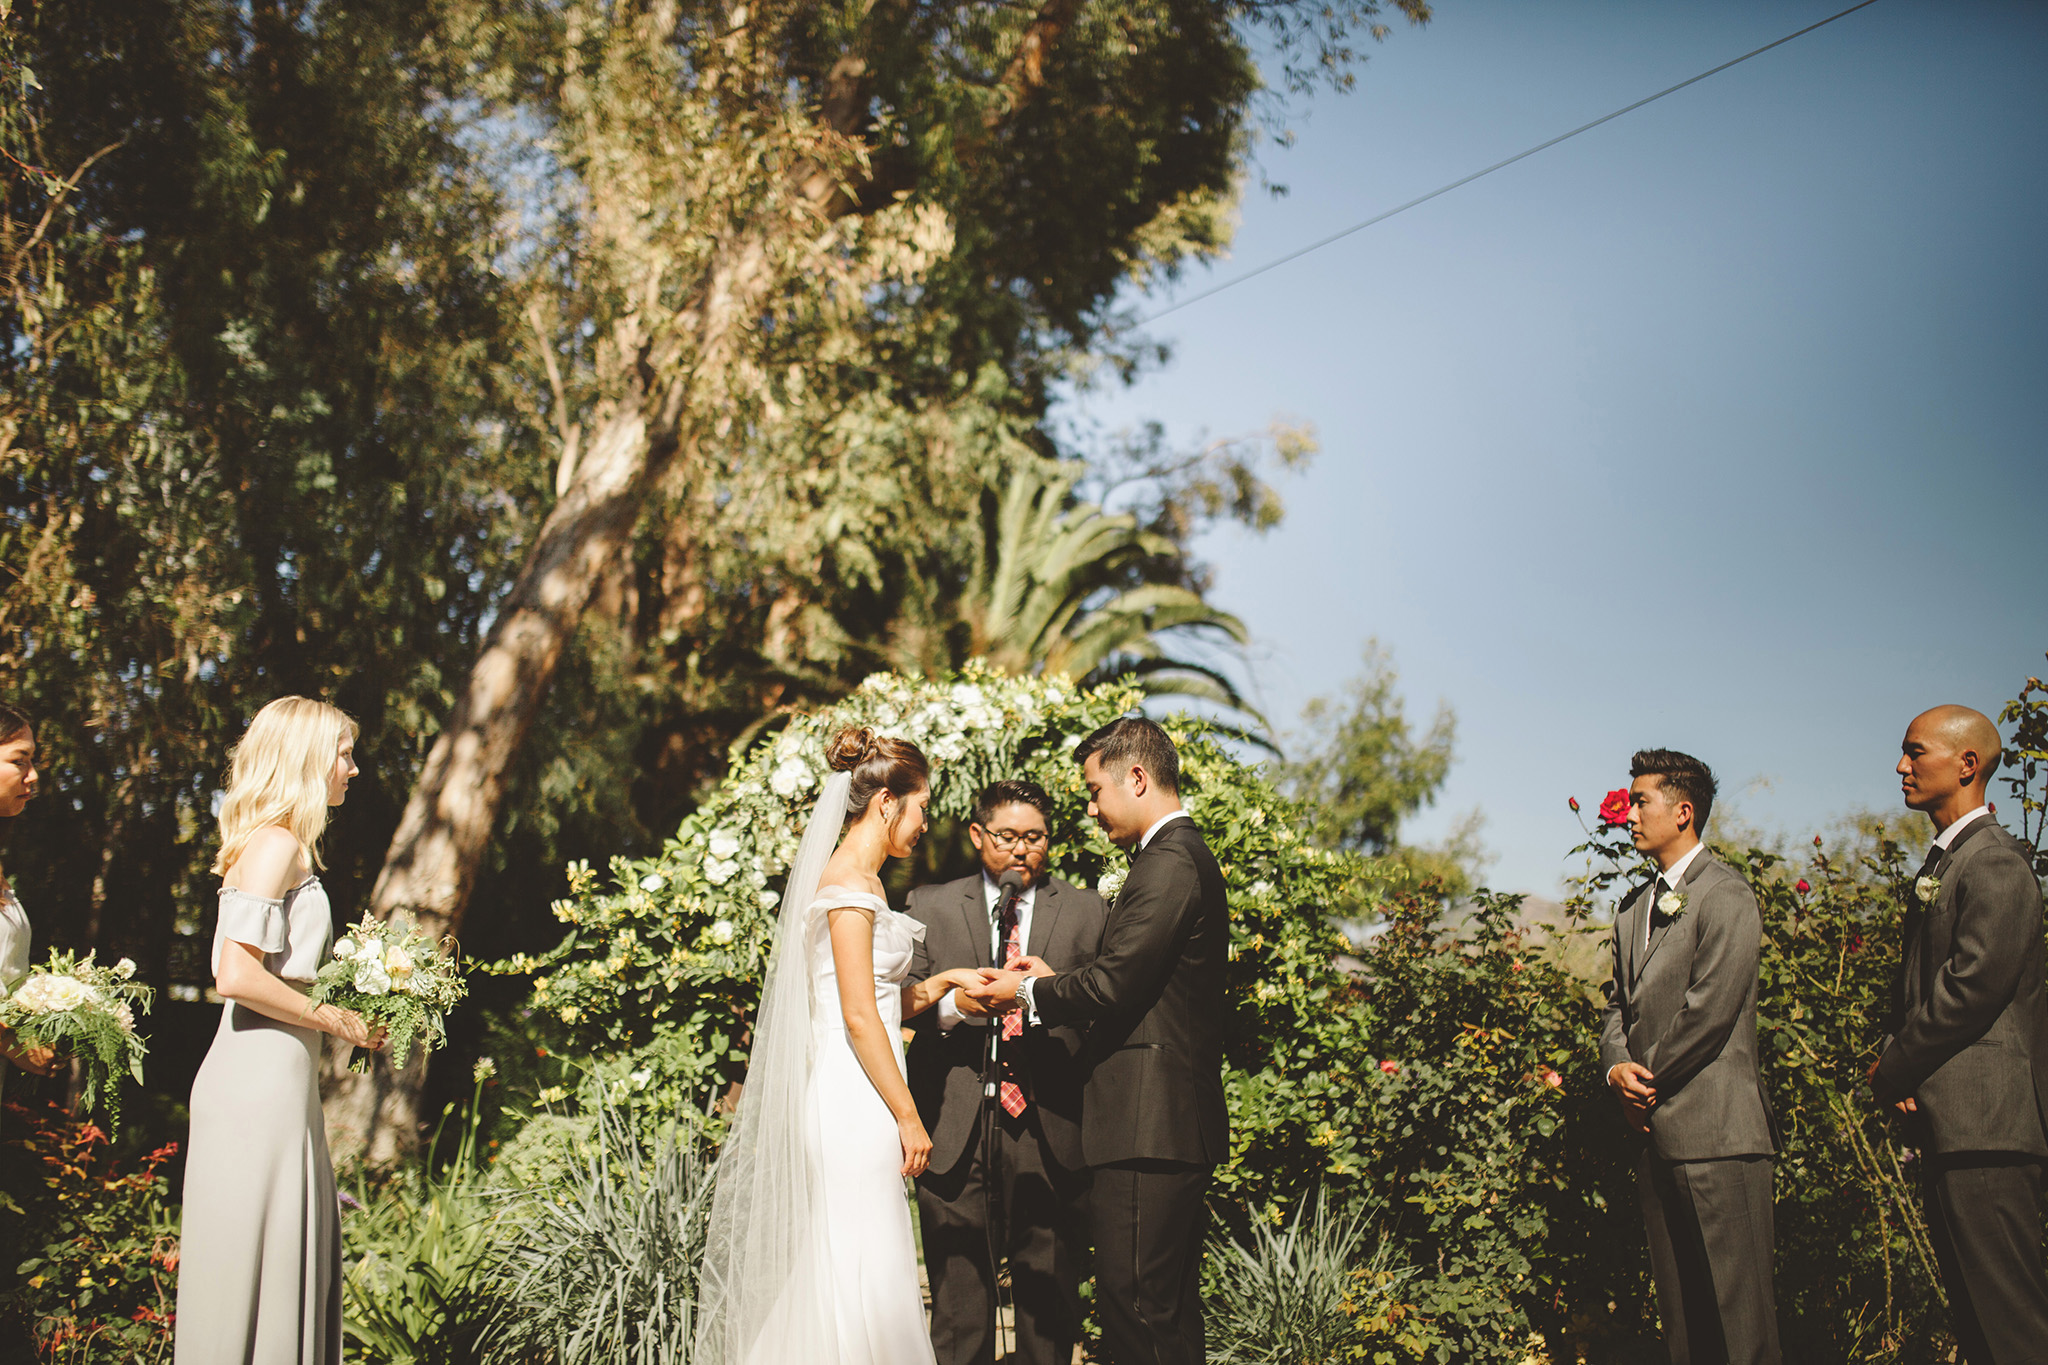 Los Angeles Outdoor wedding Venue. Garden wedding at McCormick Ranch